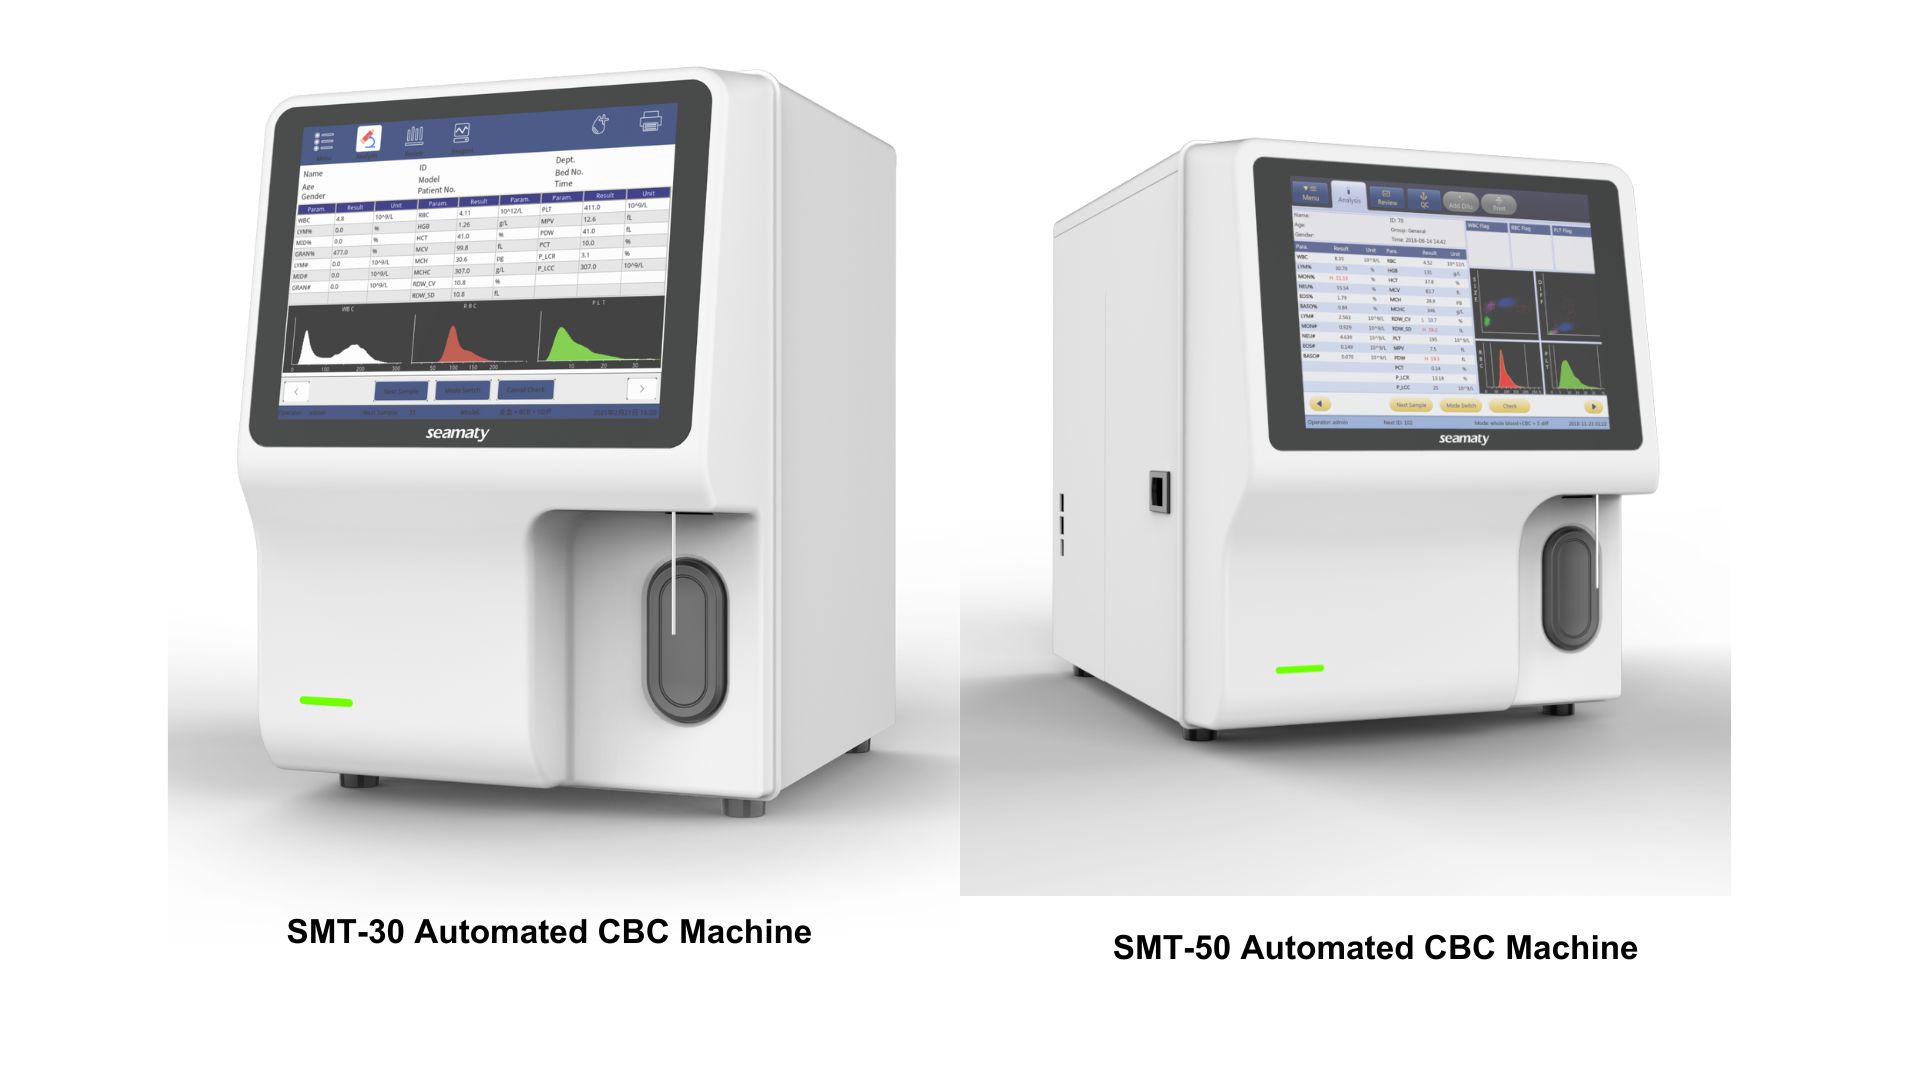 Seamaty Automated CBC Machine